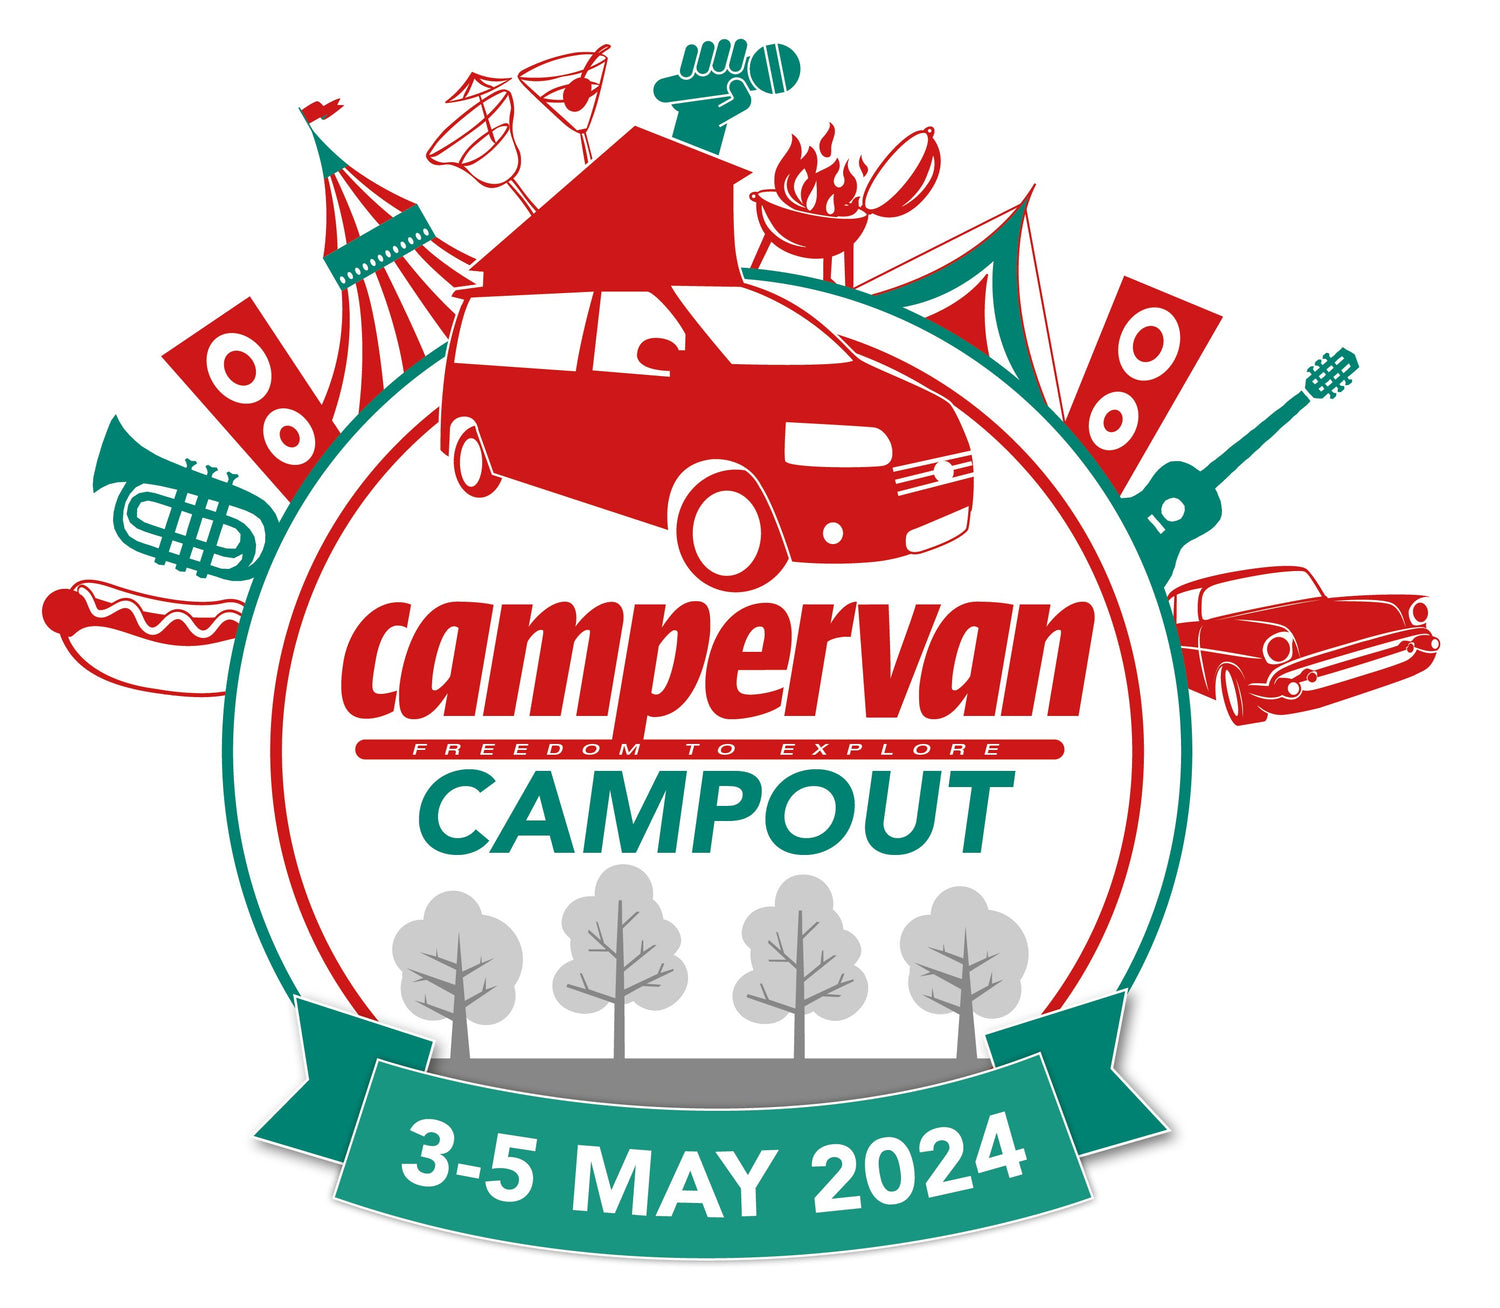 Campervan Campout logo 